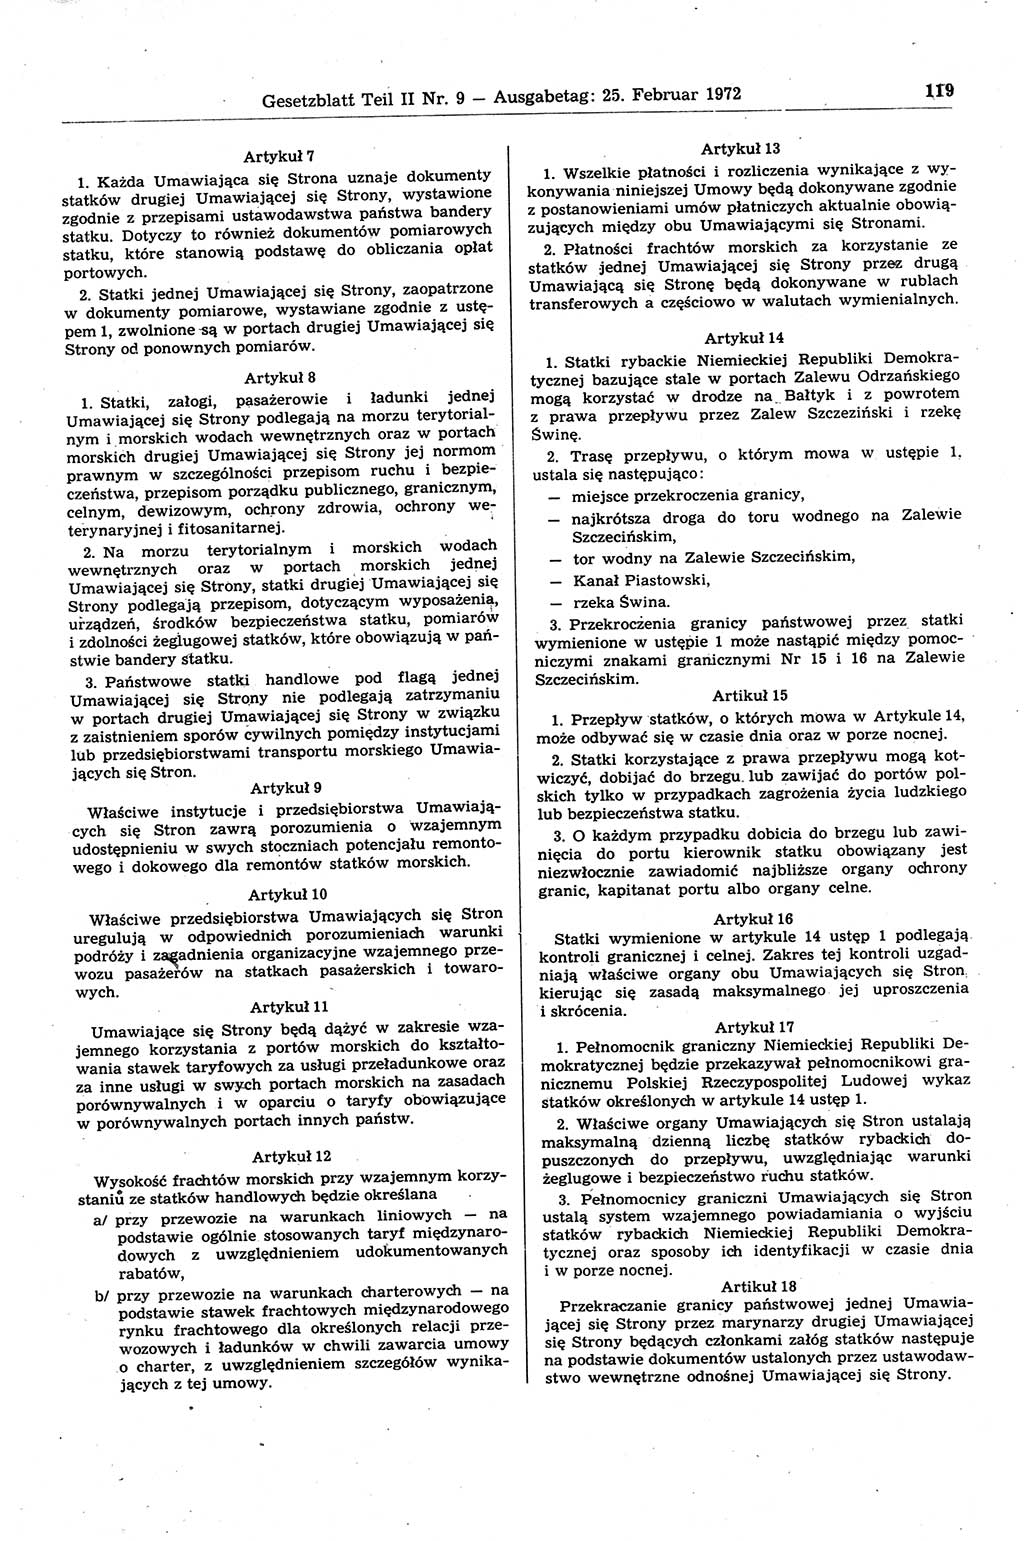 Gesetzblatt (GBl.) der Deutschen Demokratischen Republik (DDR) Teil ⅠⅠ 1972, Seite 119 (GBl. DDR ⅠⅠ 1972, S. 119)